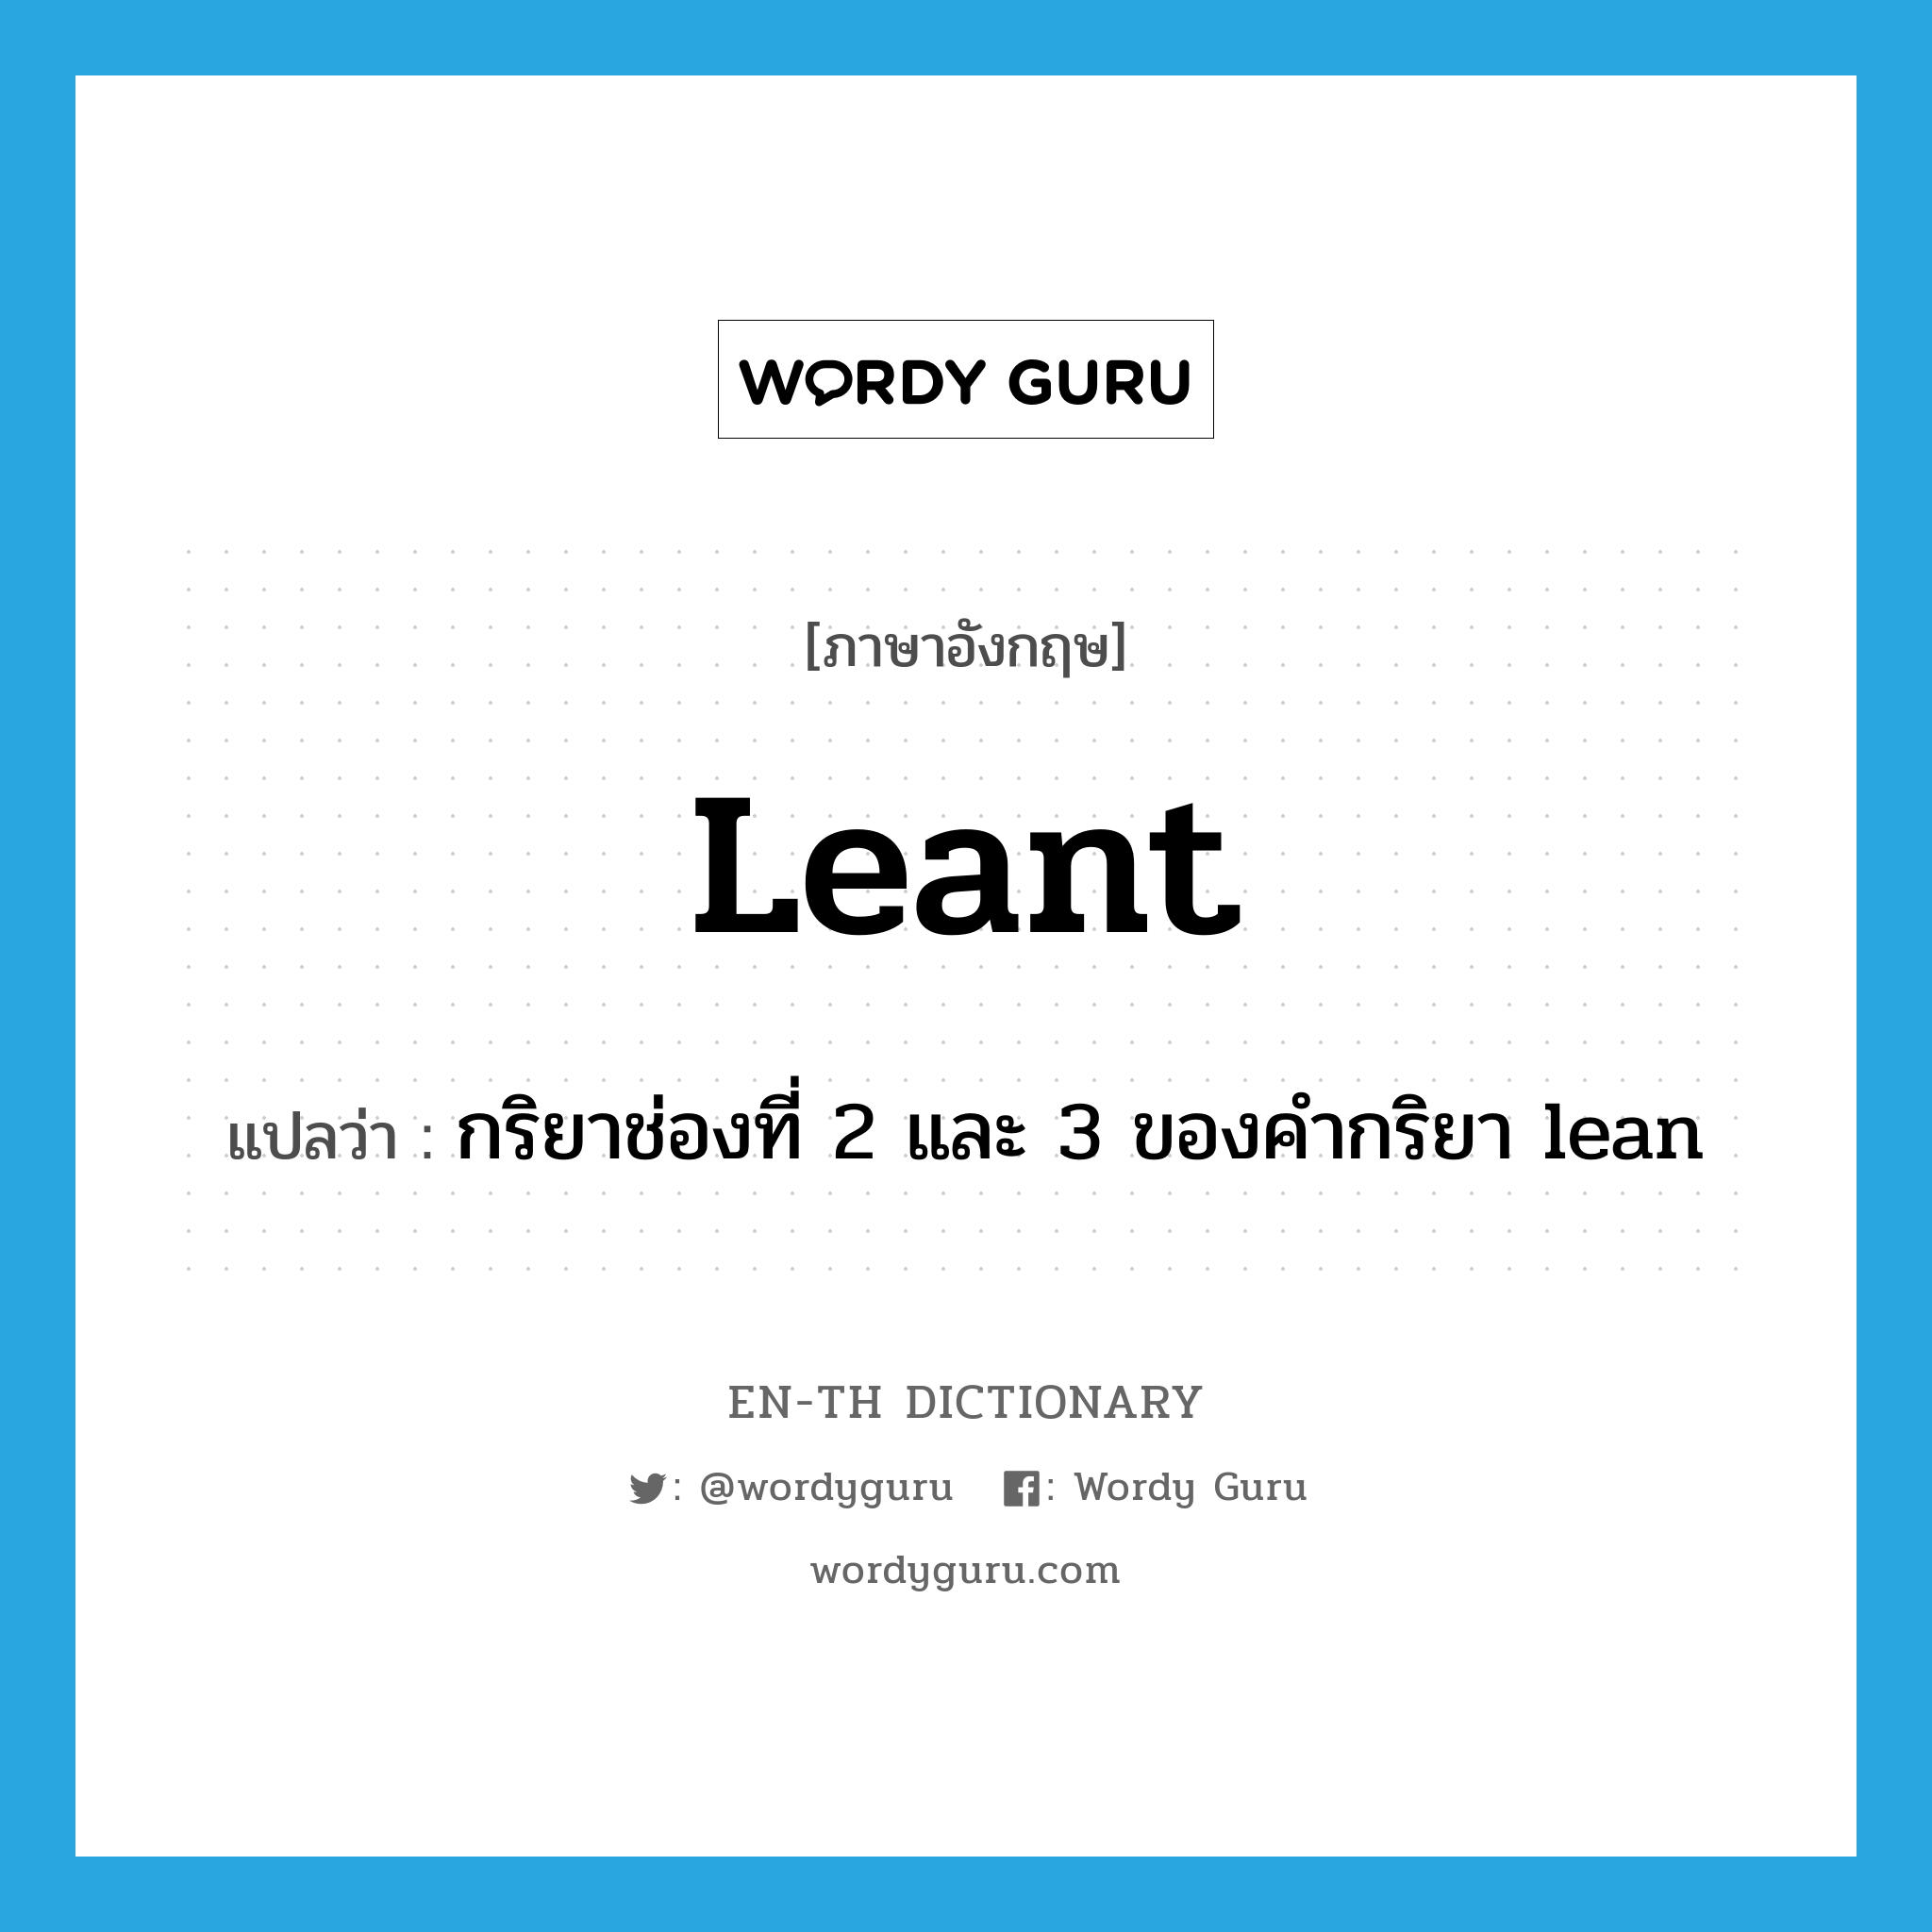 กริยาช่องที่ 2 และ 3 ของคำกริยา lean ภาษาอังกฤษ?, คำศัพท์ภาษาอังกฤษ กริยาช่องที่ 2 และ 3 ของคำกริยา lean แปลว่า leant ประเภท VI หมวด VI